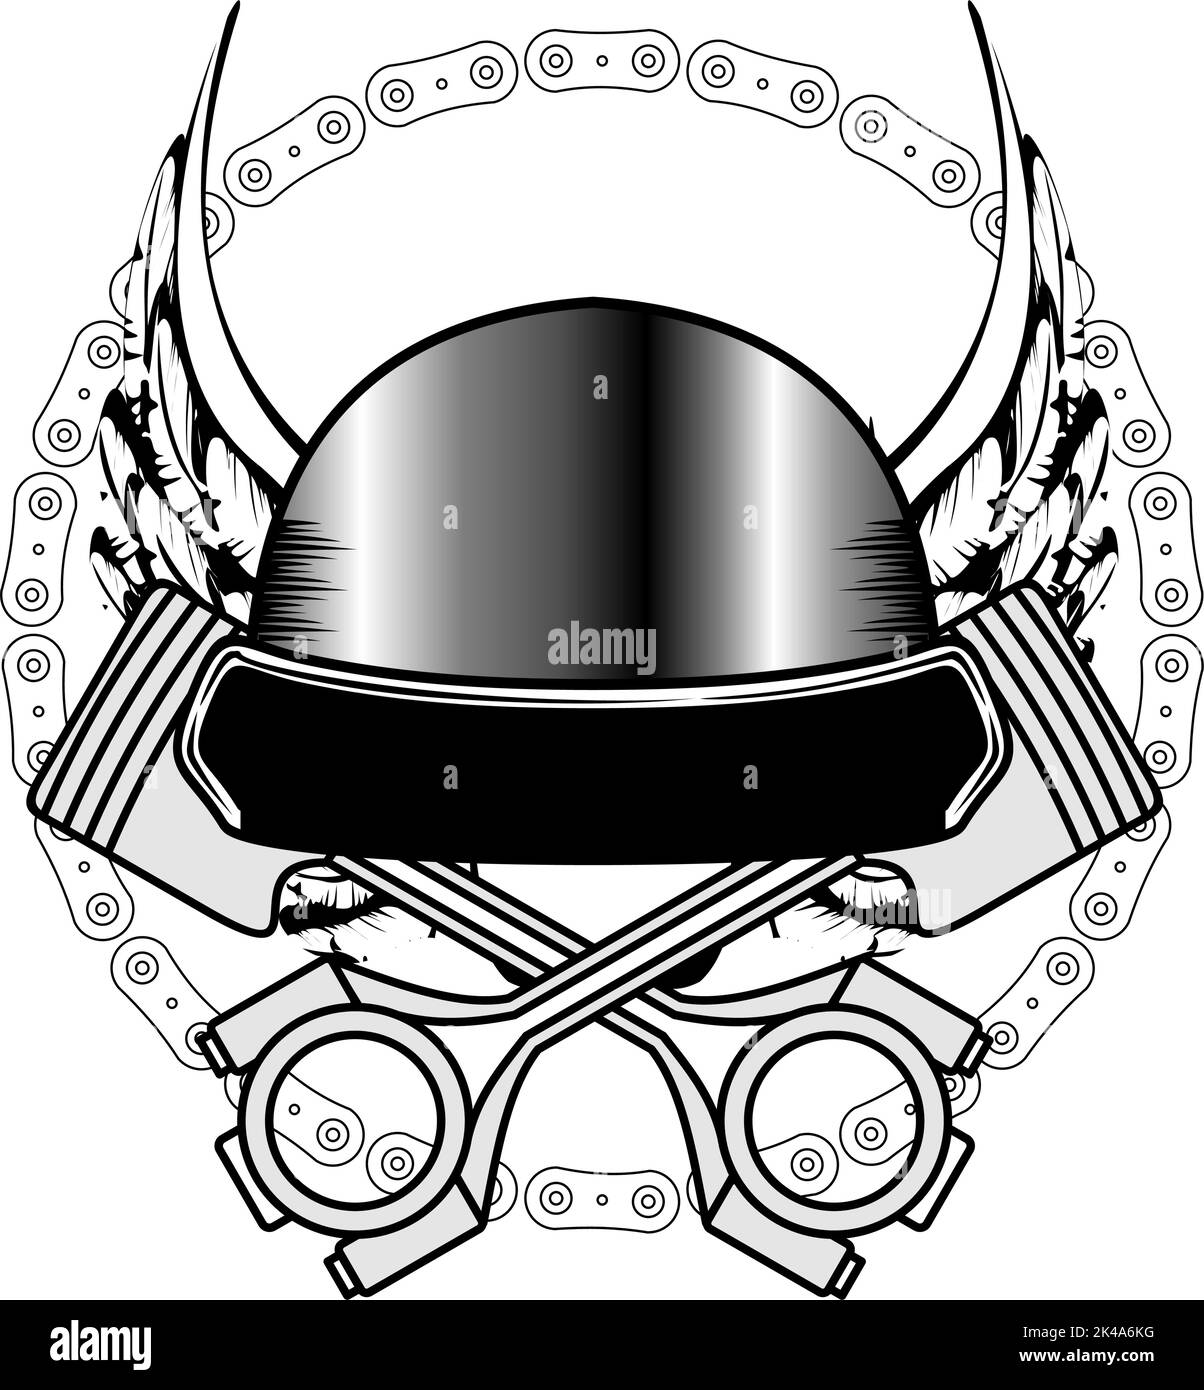 biker crest sticker insignia tattoo helmet illustration in vector format Stock Vector